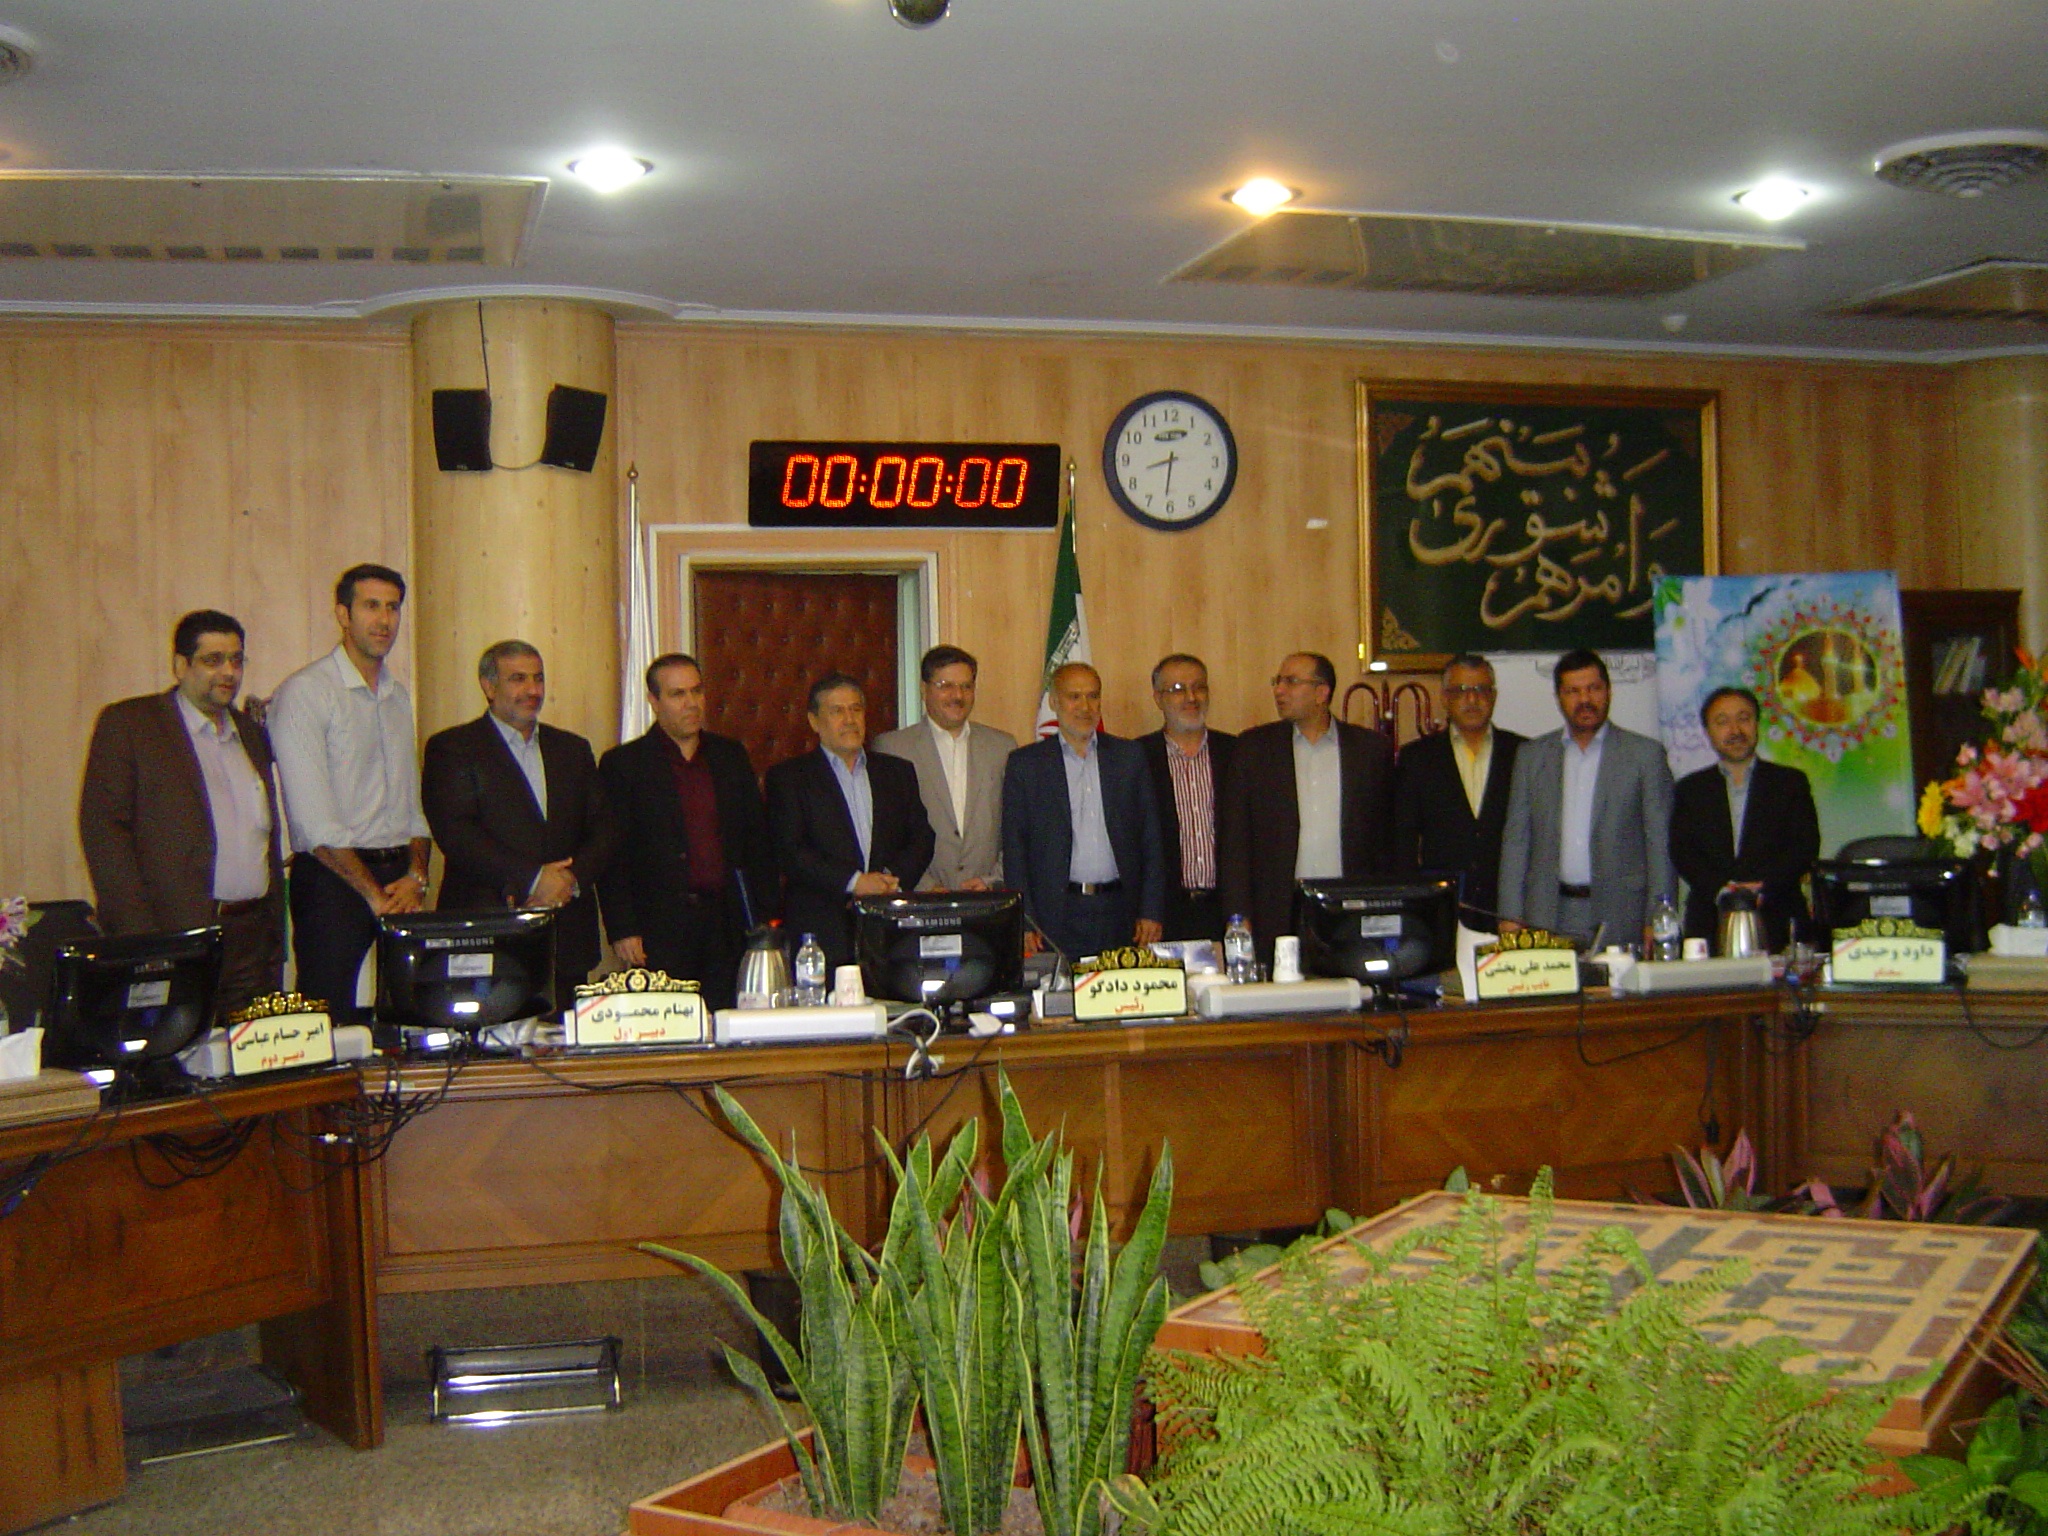 جلسه ی شورای شهر کرج: انتخاب کمیسیونی 7 نفره برای امور مالیاتی